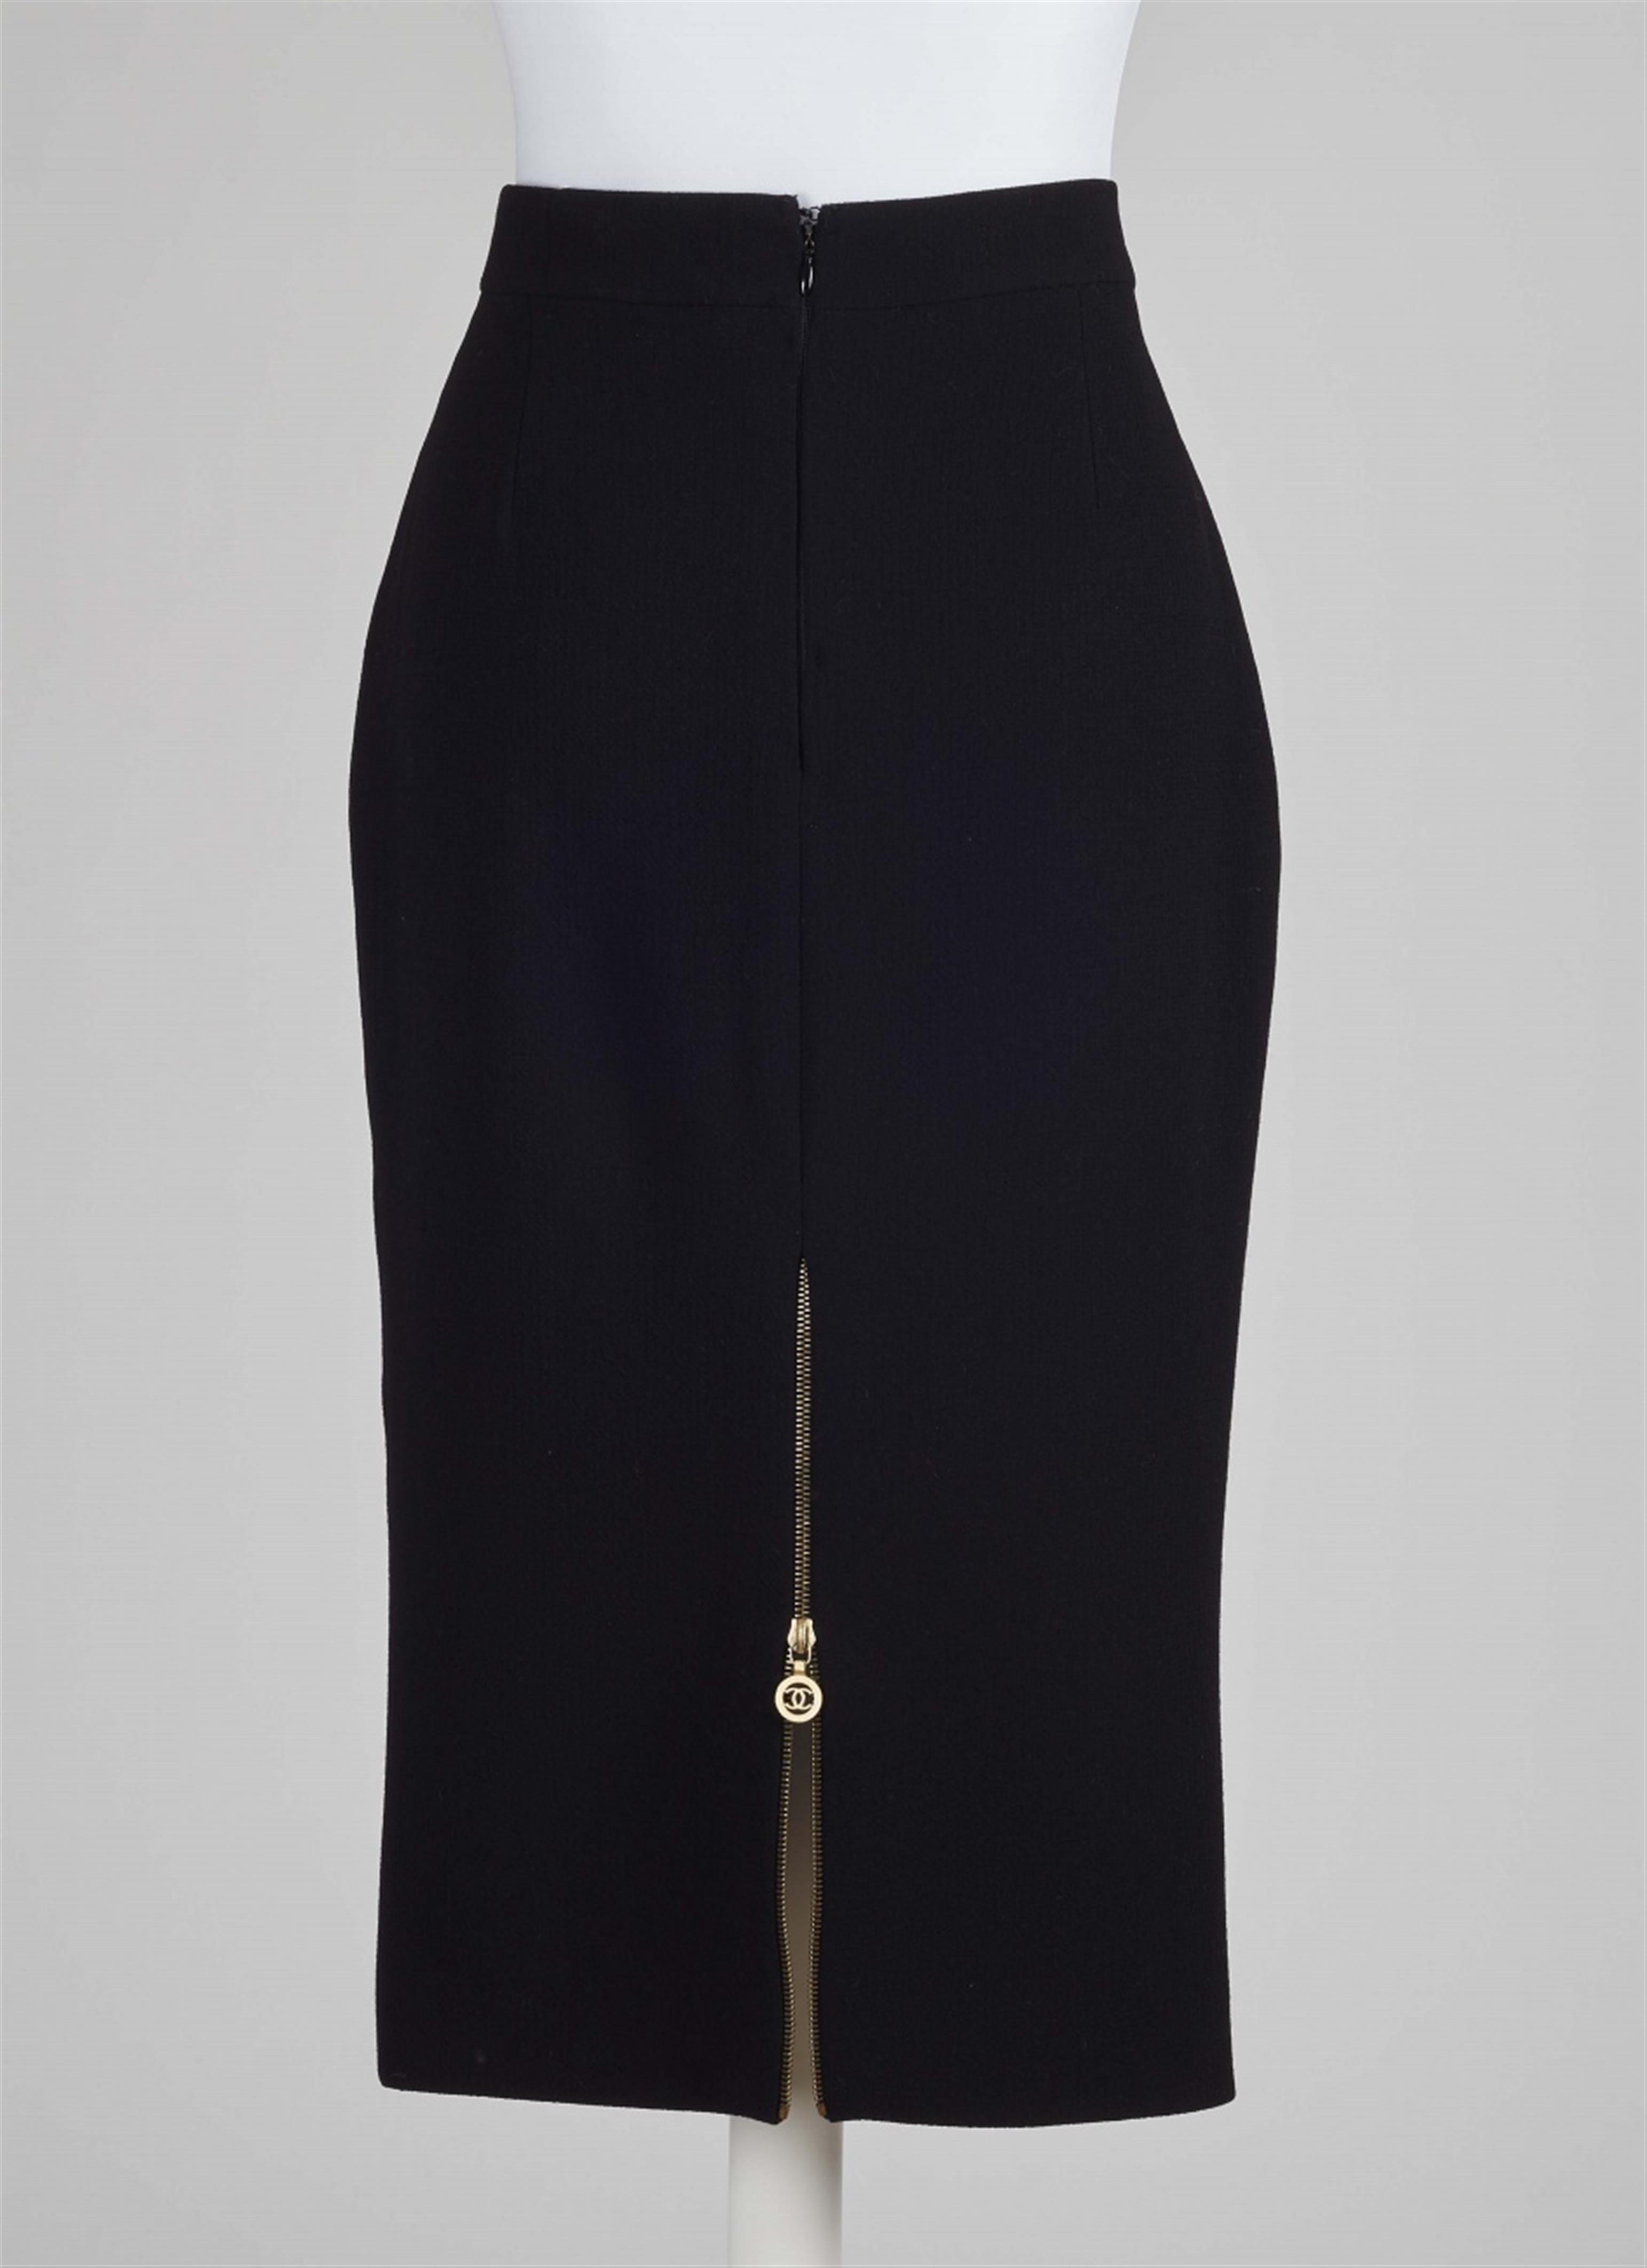 A Chanel Boutique skirt, Autumn 1989 - image-2